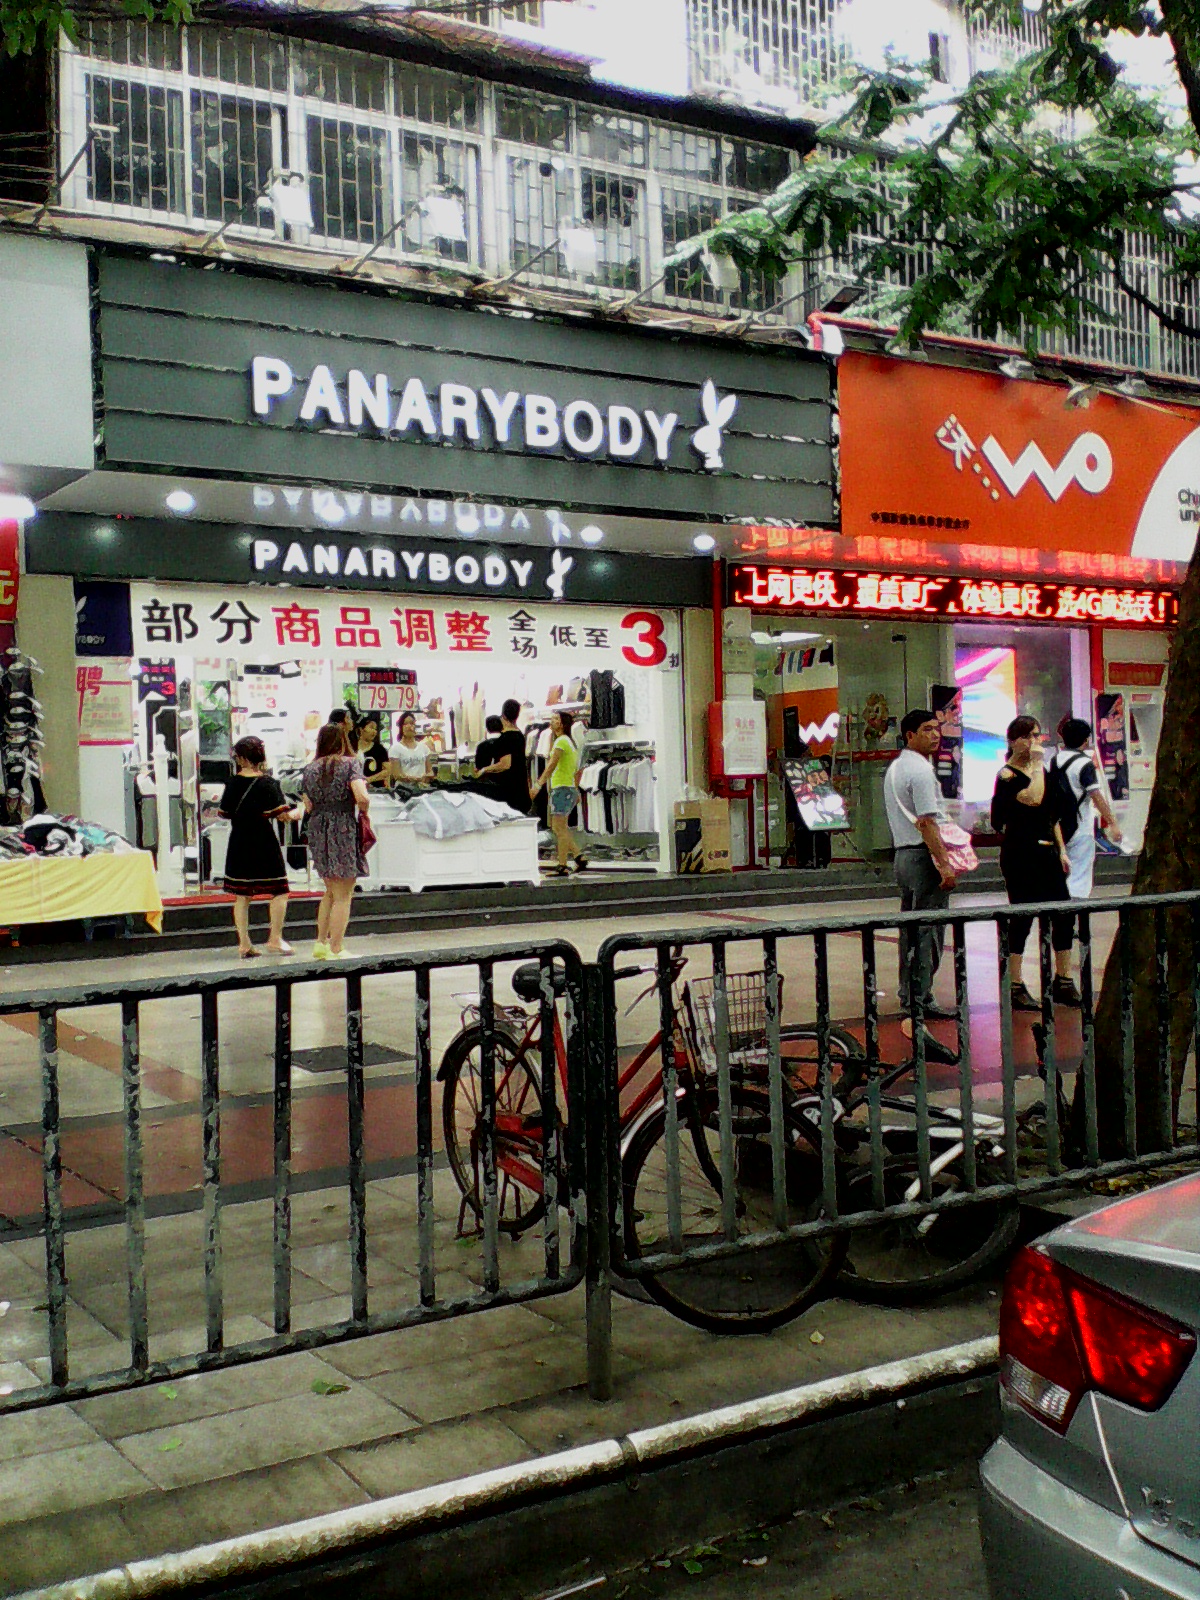 ‘Panarabody‘ - kicsit mintha a Playboyra hajazna a betűtípus és az is, hogy az embléma egy nyúl.:D